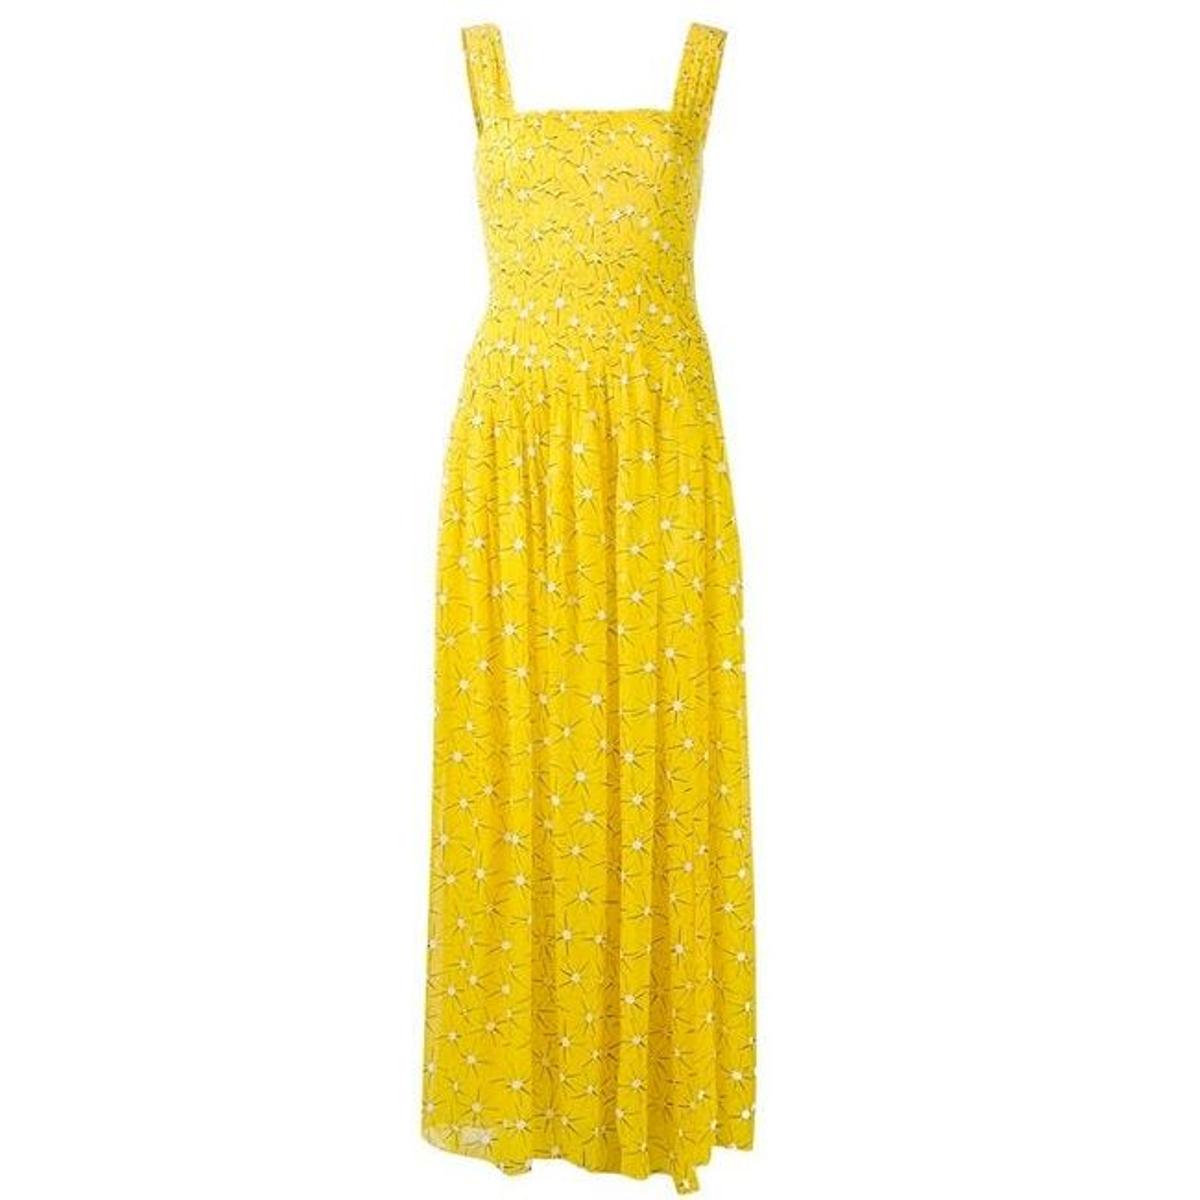 Vestido amarillo estampado de Diane von Furstenberg